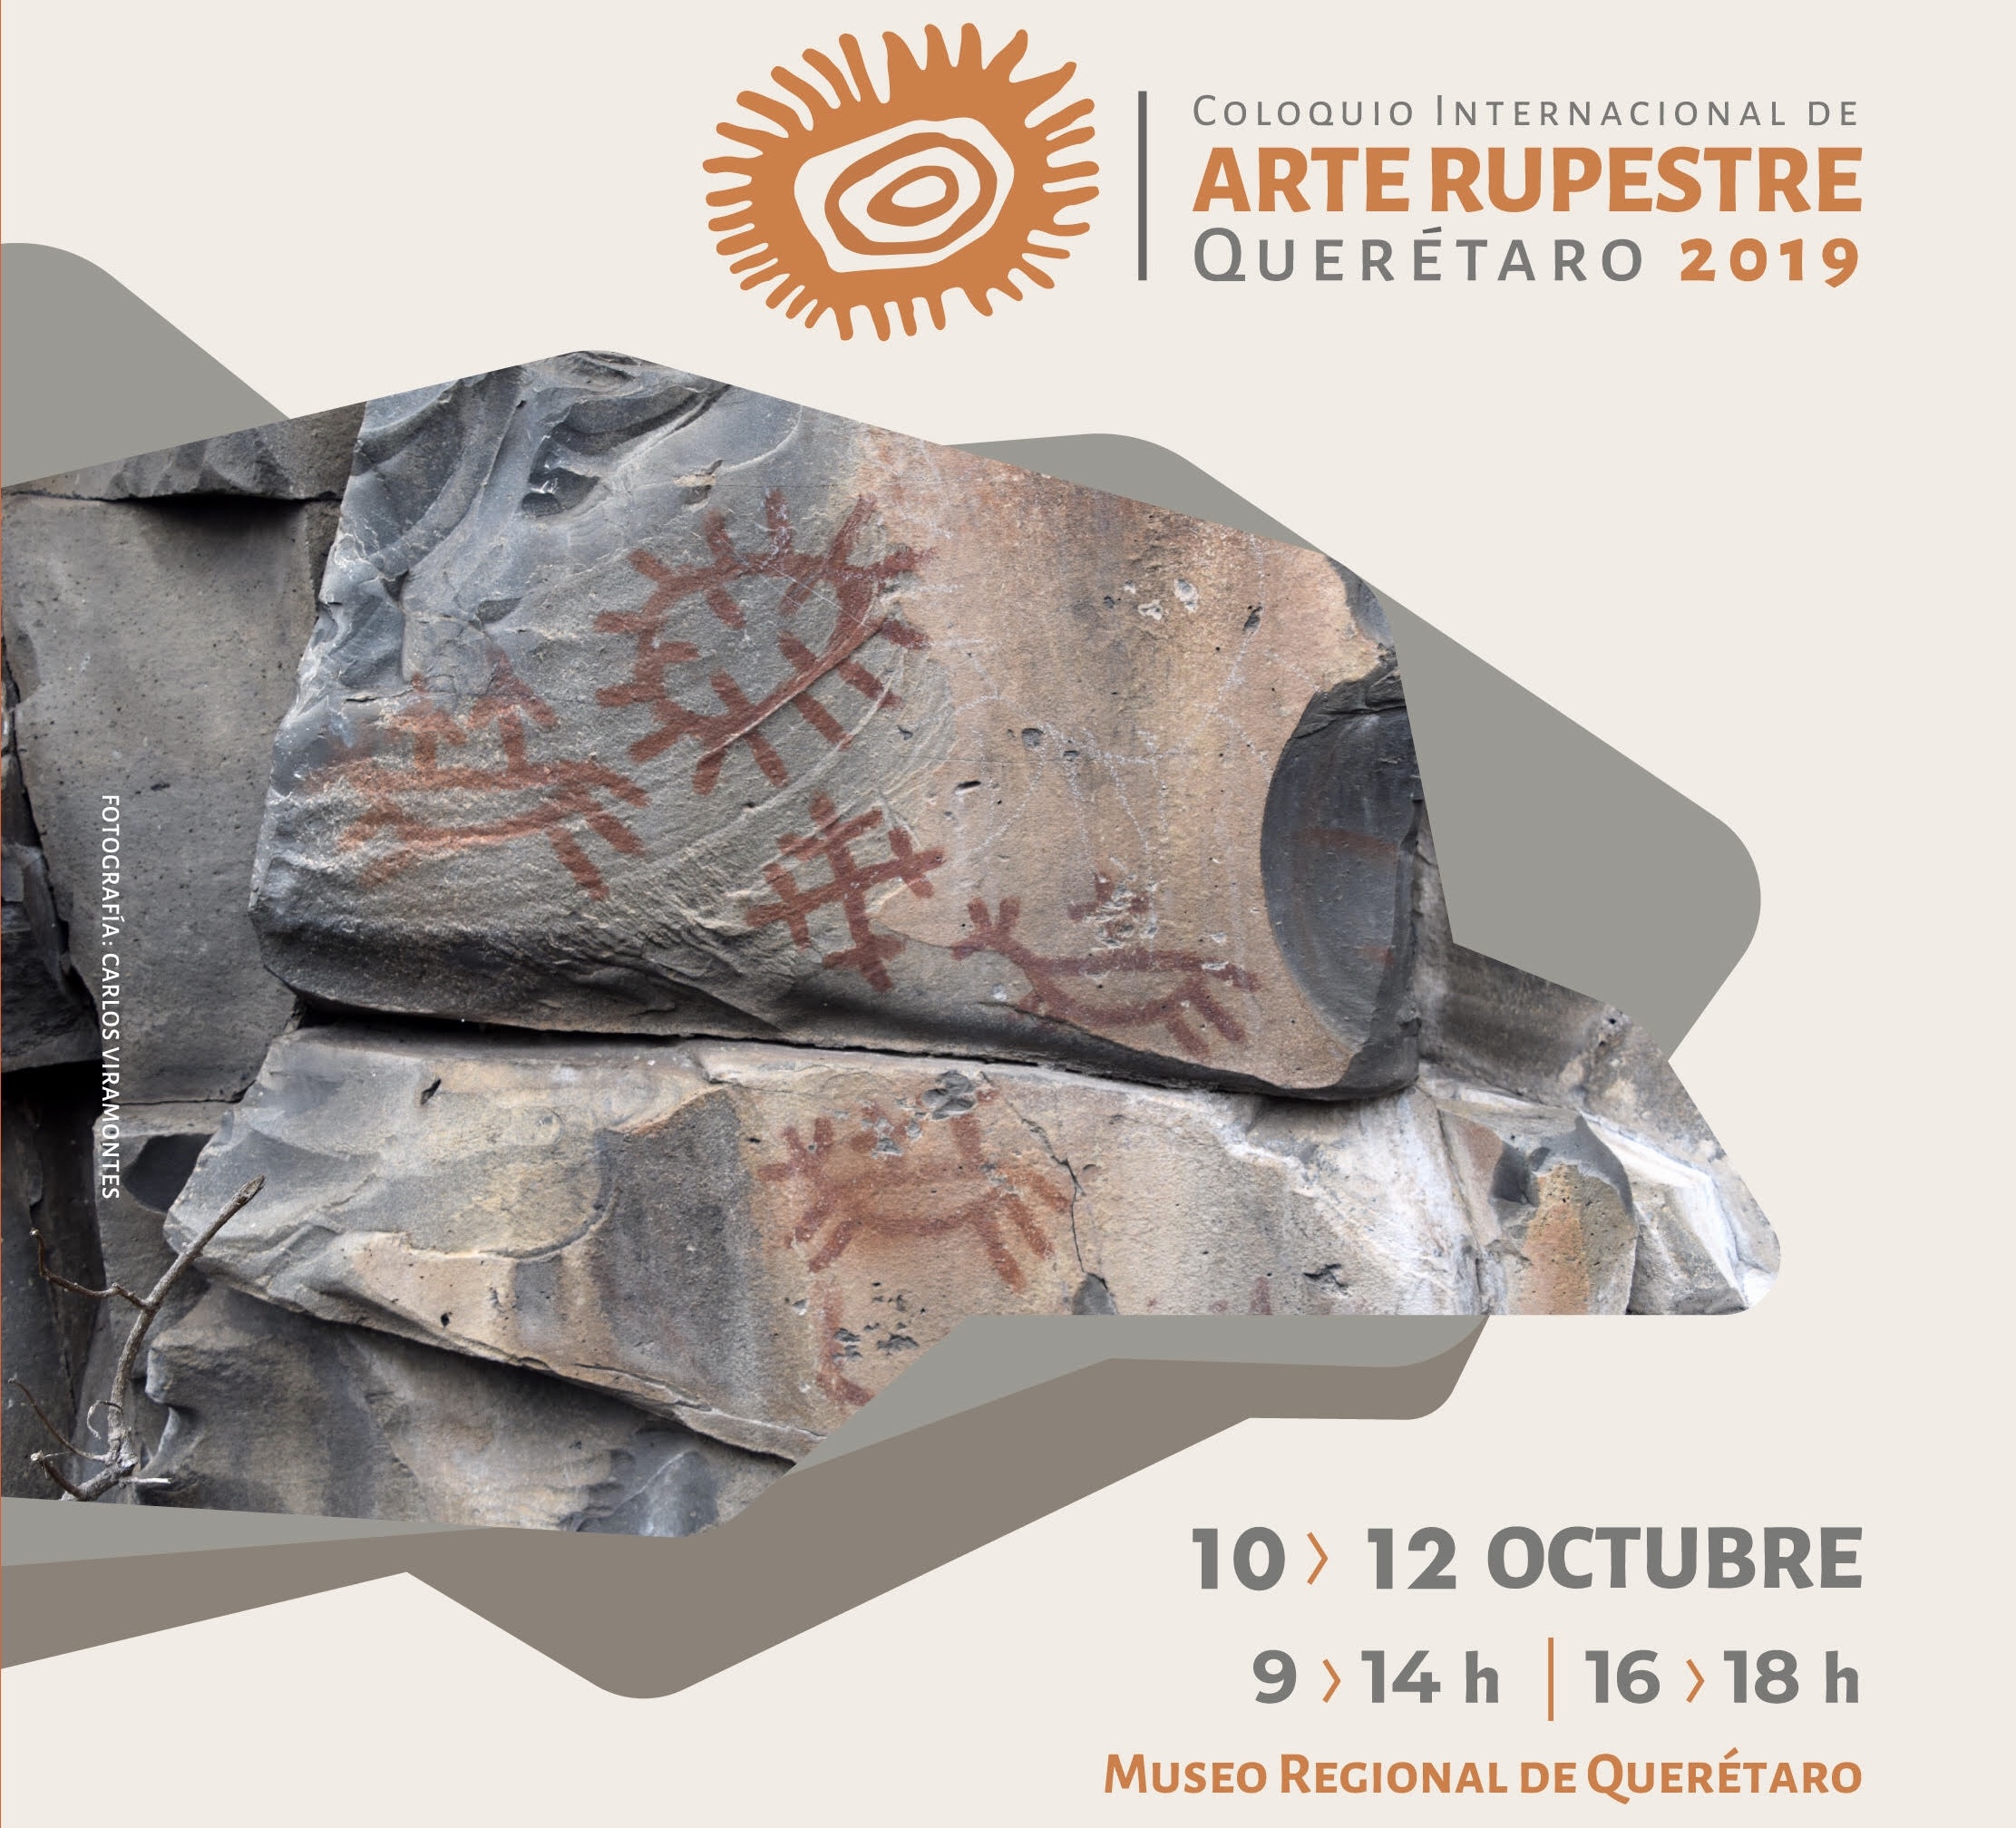  Convoca INAH al Primer Coloquio Internacional de Arte Rupestre en Querétaro